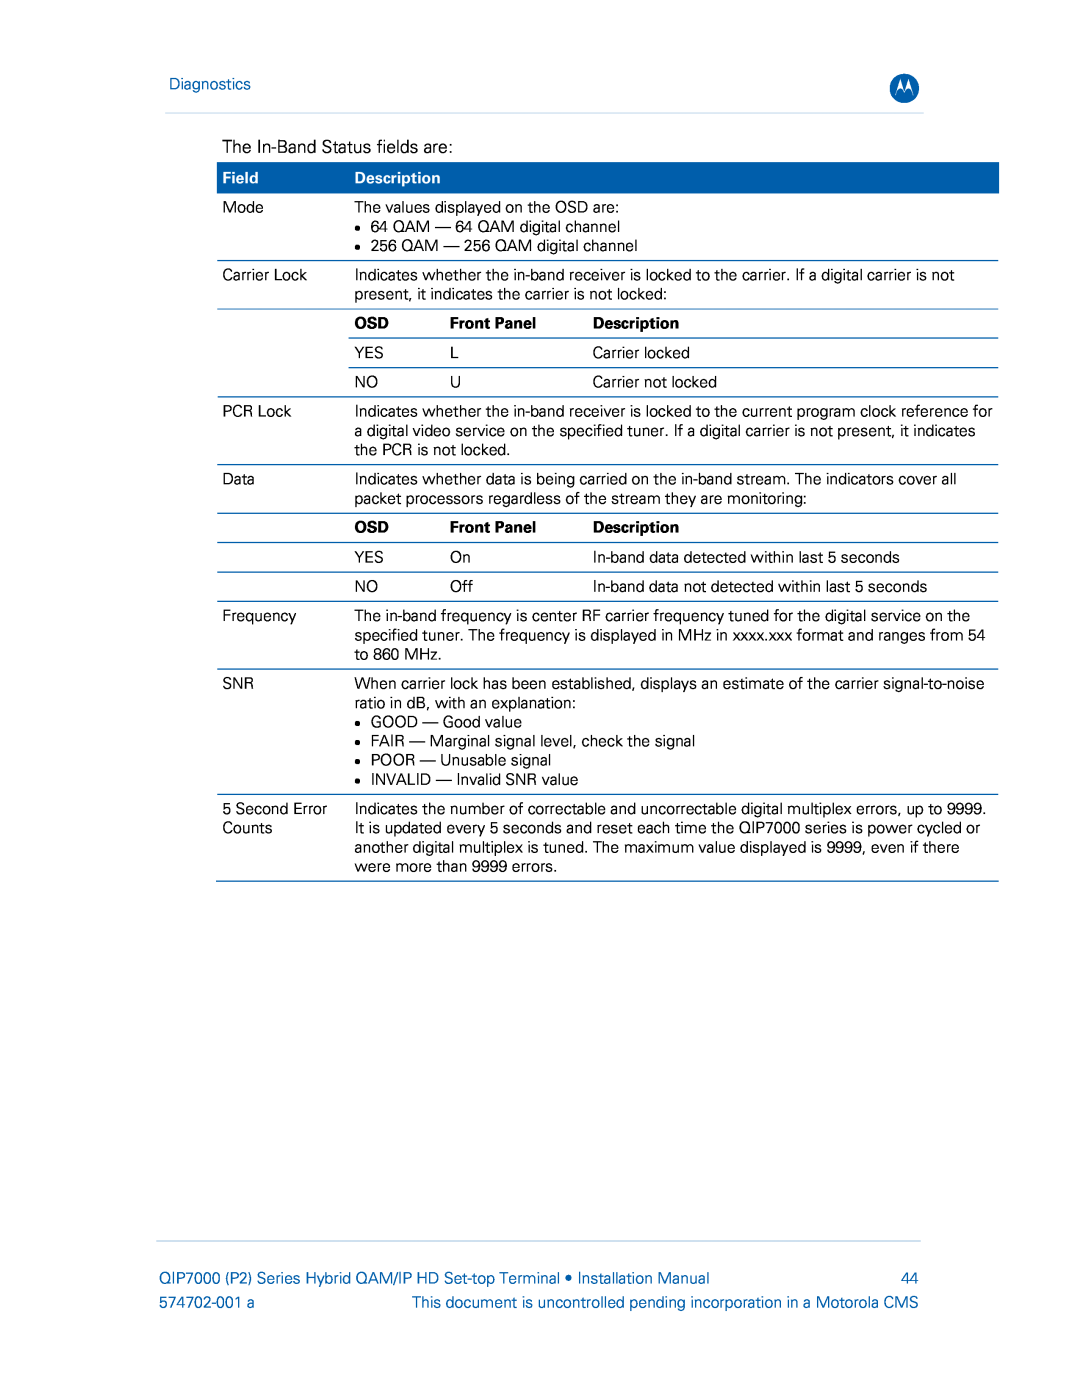 Motorola QIP7000 installation manual Diagnostics, Field, Description, Front Panel, 574702-001 a 